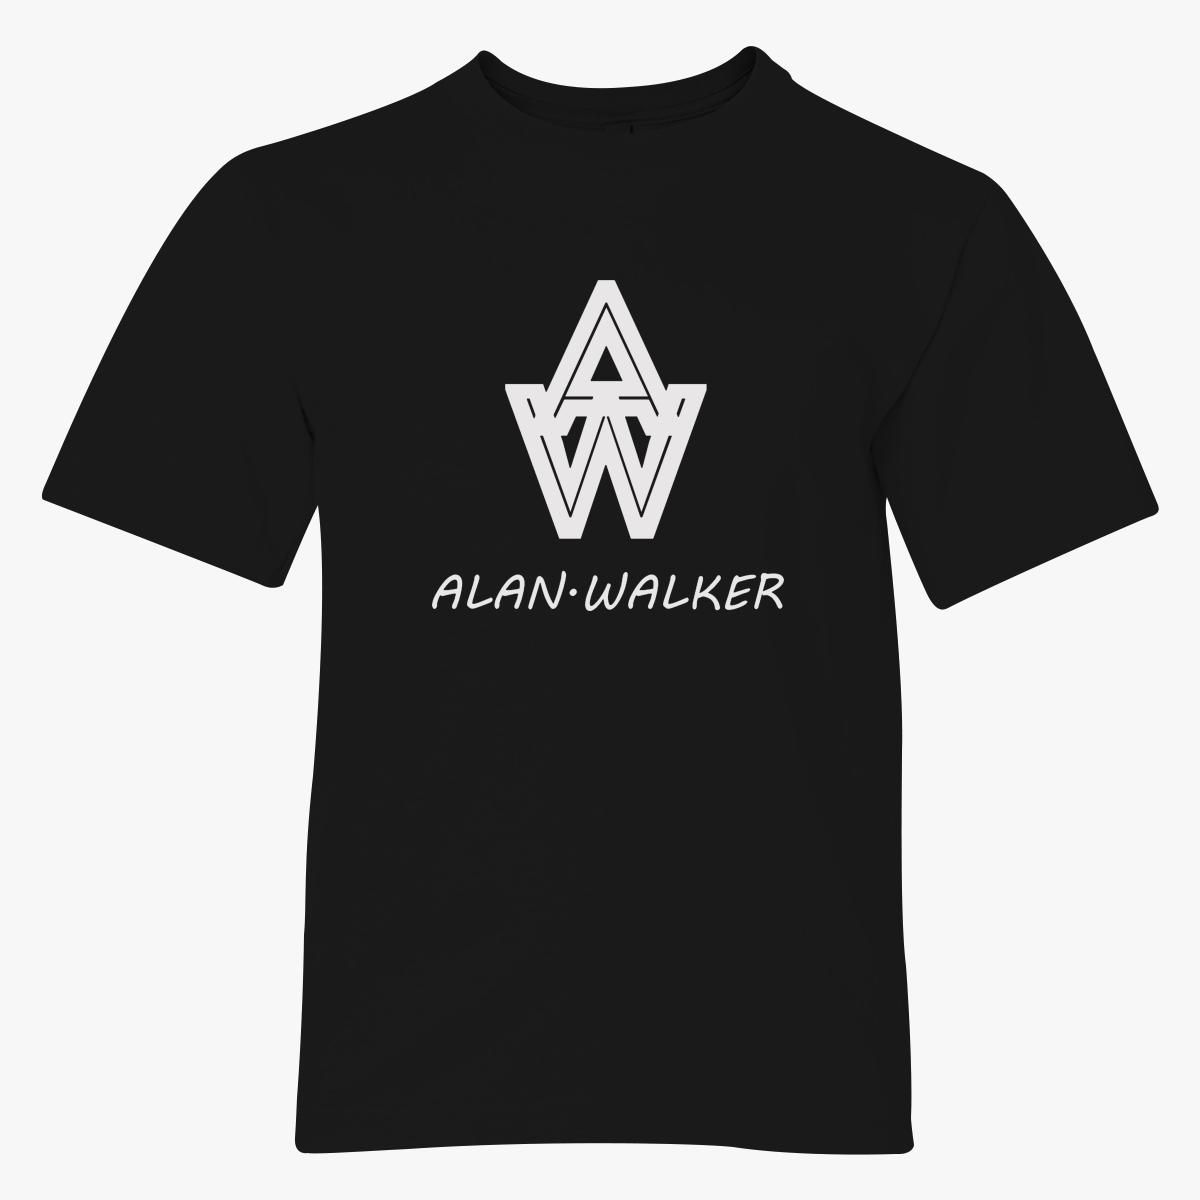 87fab5649d Alan Walker T Shirt Roblox Suchanabox Com - 87fab5649d alan walker t shirt roblox suchanabox com